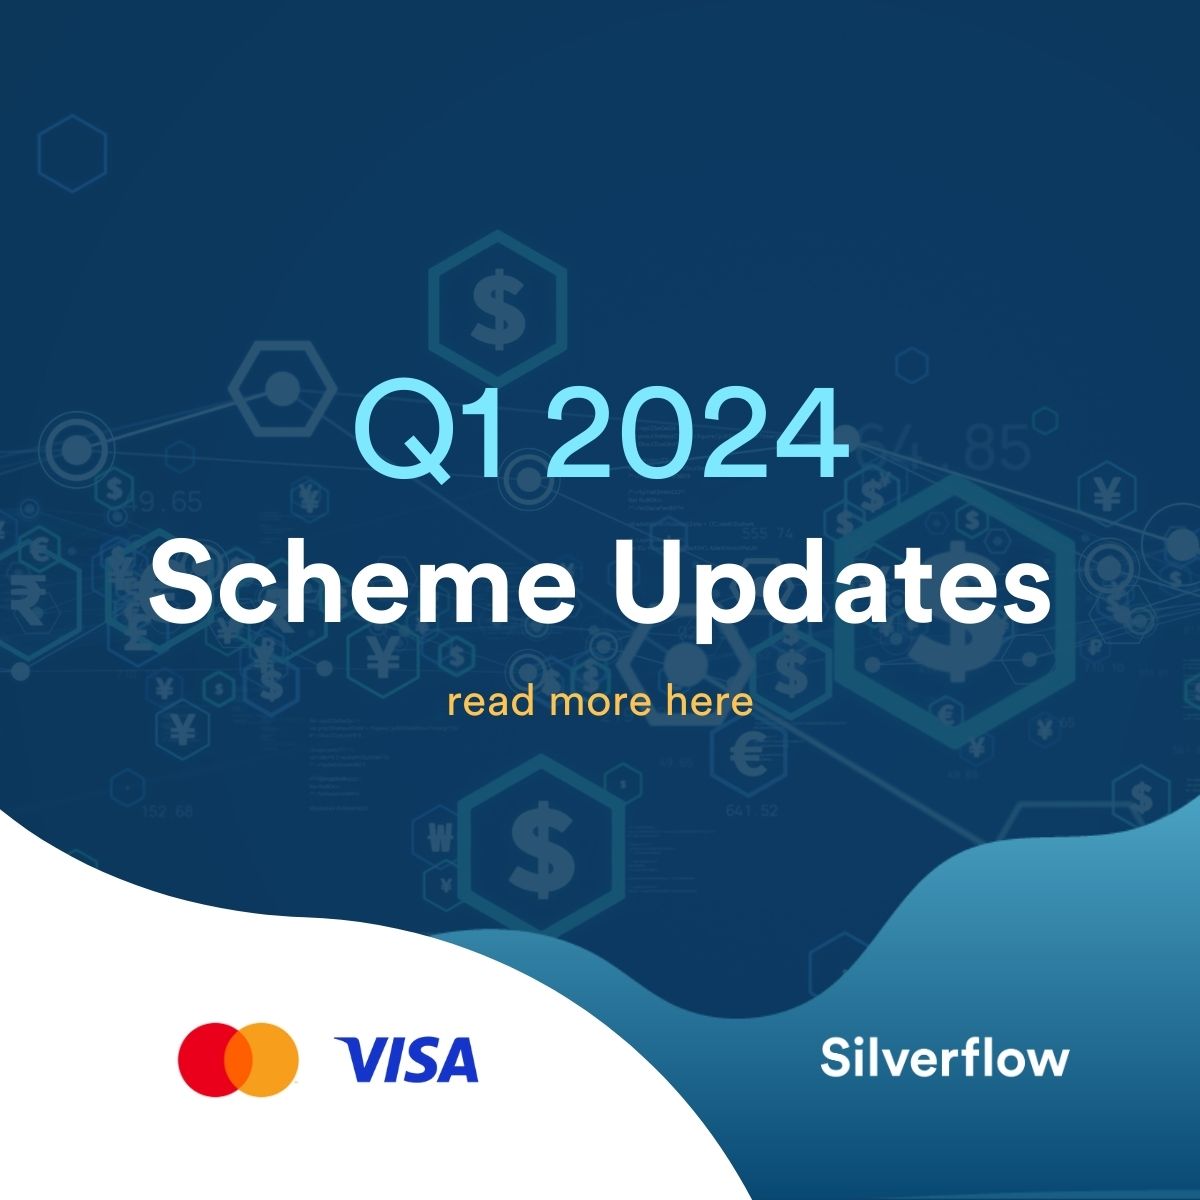 Q1 2024 Scheme Updates